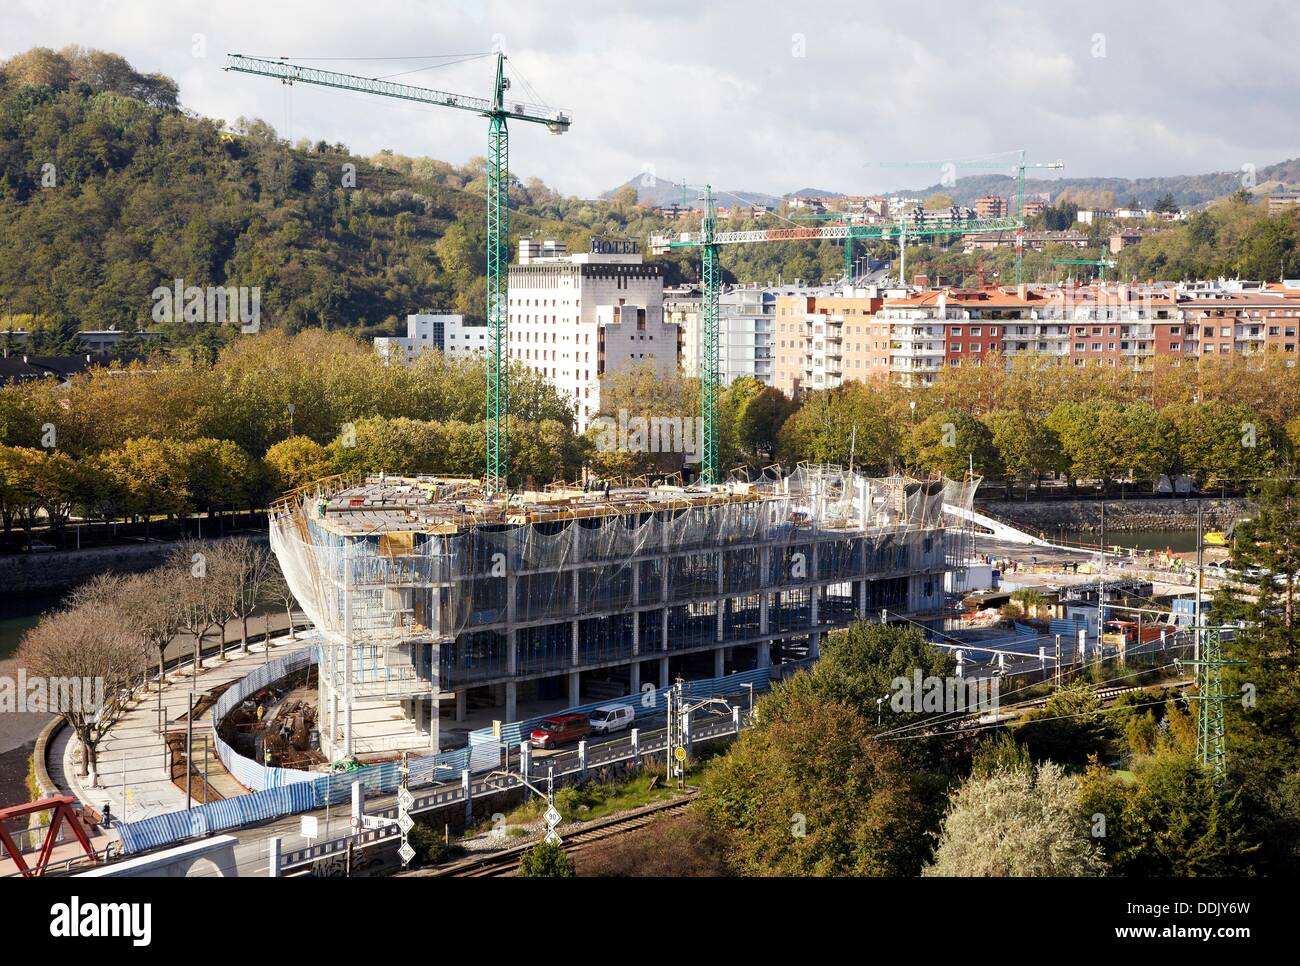 Building under construction, San Sebastian, Guipuzcoa, Basque Country, Spain Stock Photo